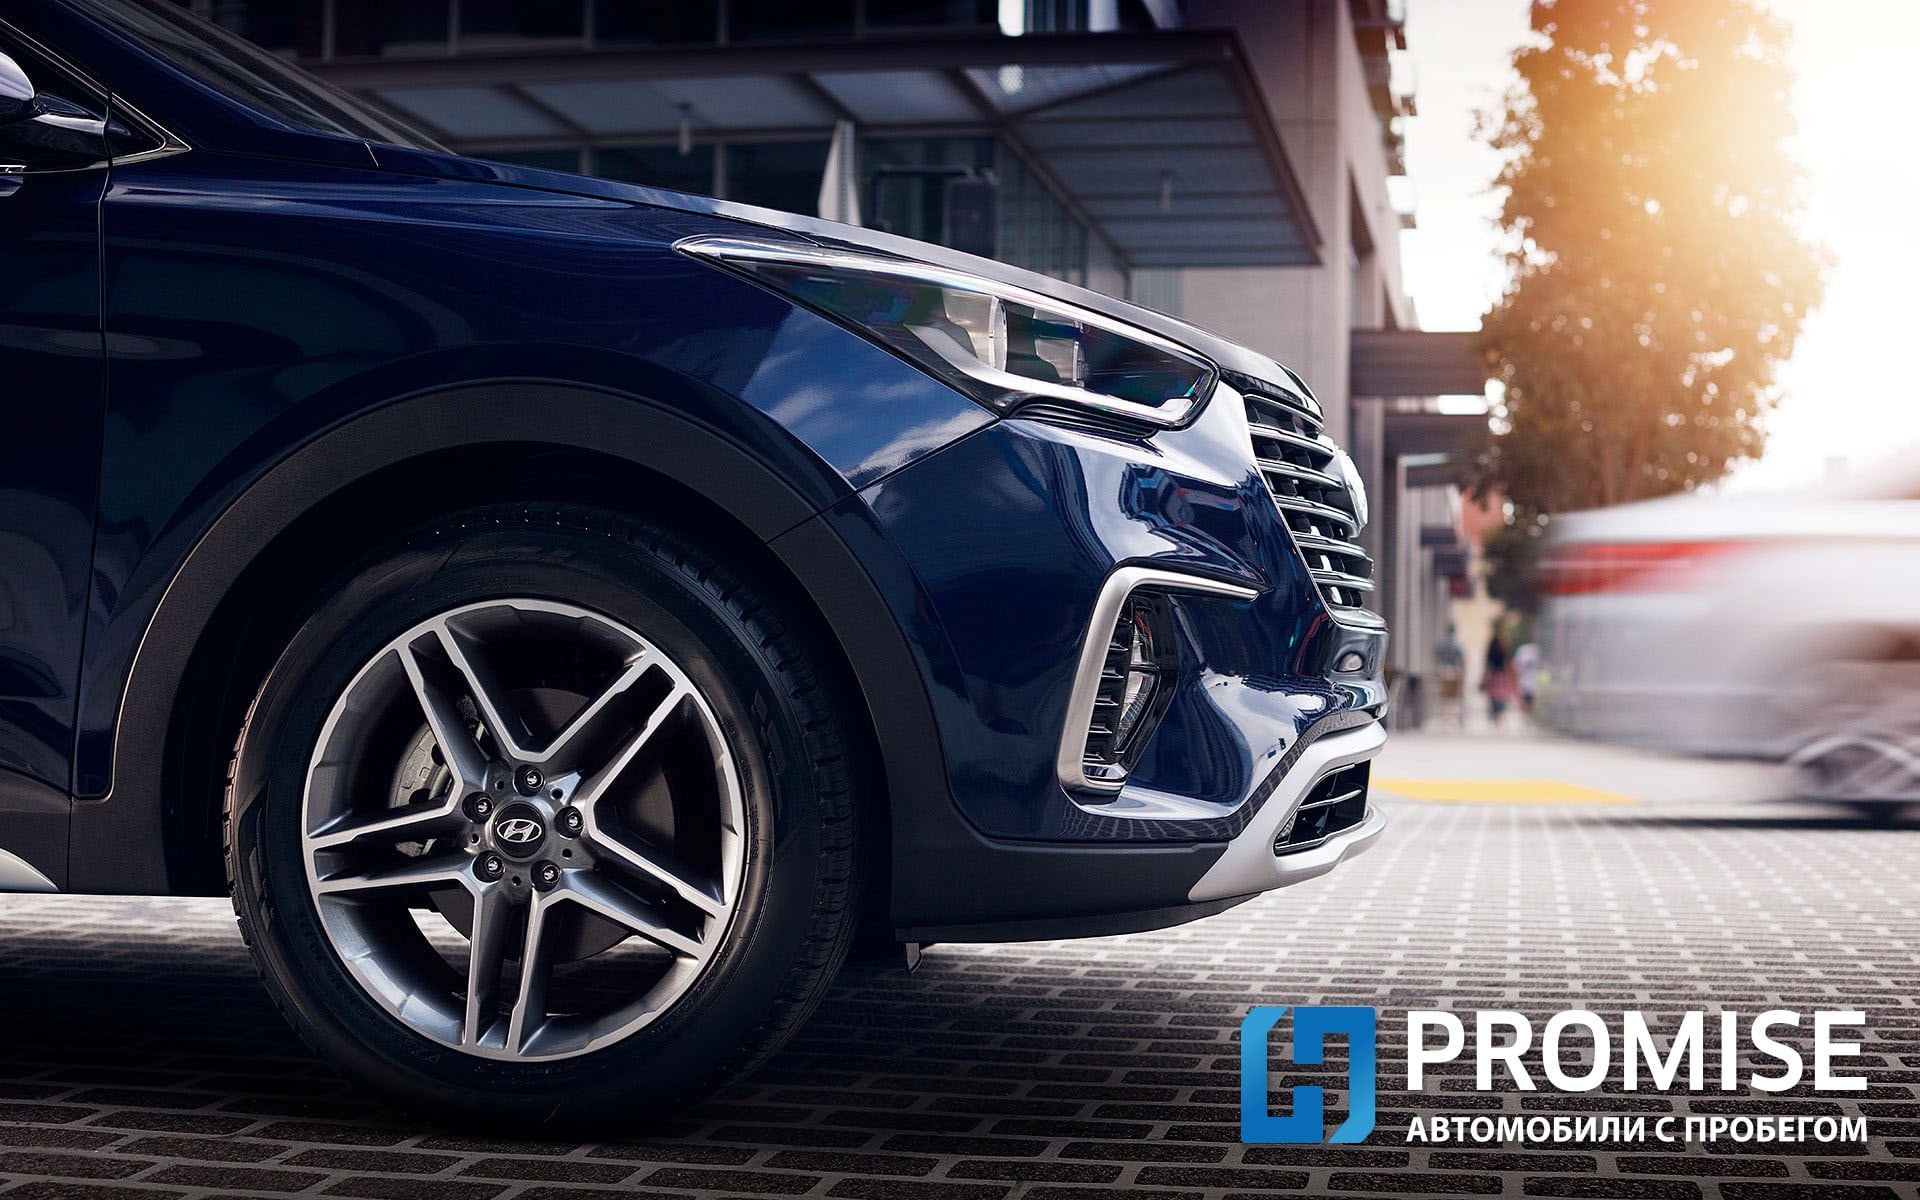 Специальные условия кредитования на покупку сертифицированных автомобилей Hyundai с пробегом